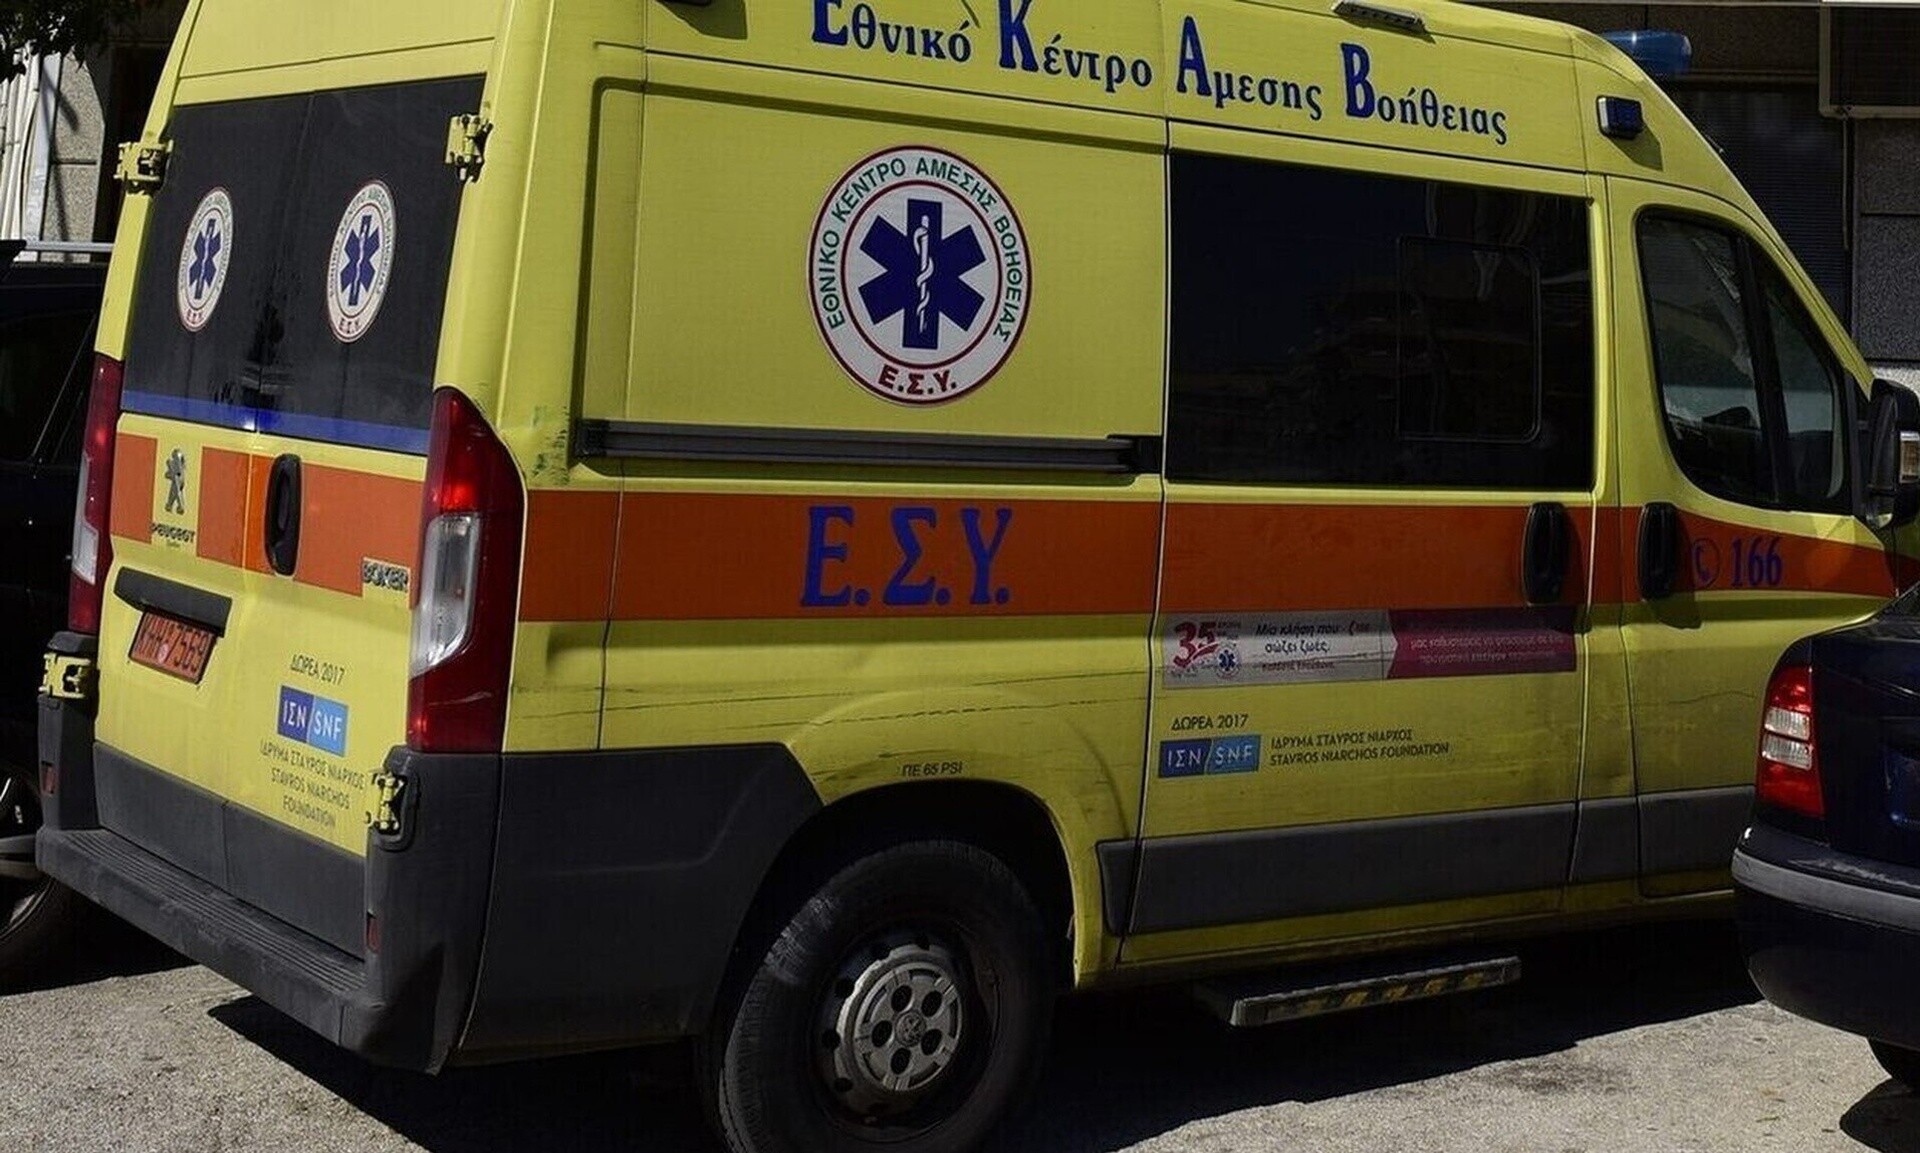 Εργατικό ατύχημα στο Ηράκλειο: Έπεσαν πάνω του ξύλα και τραυματίστηκε βαρύτατα